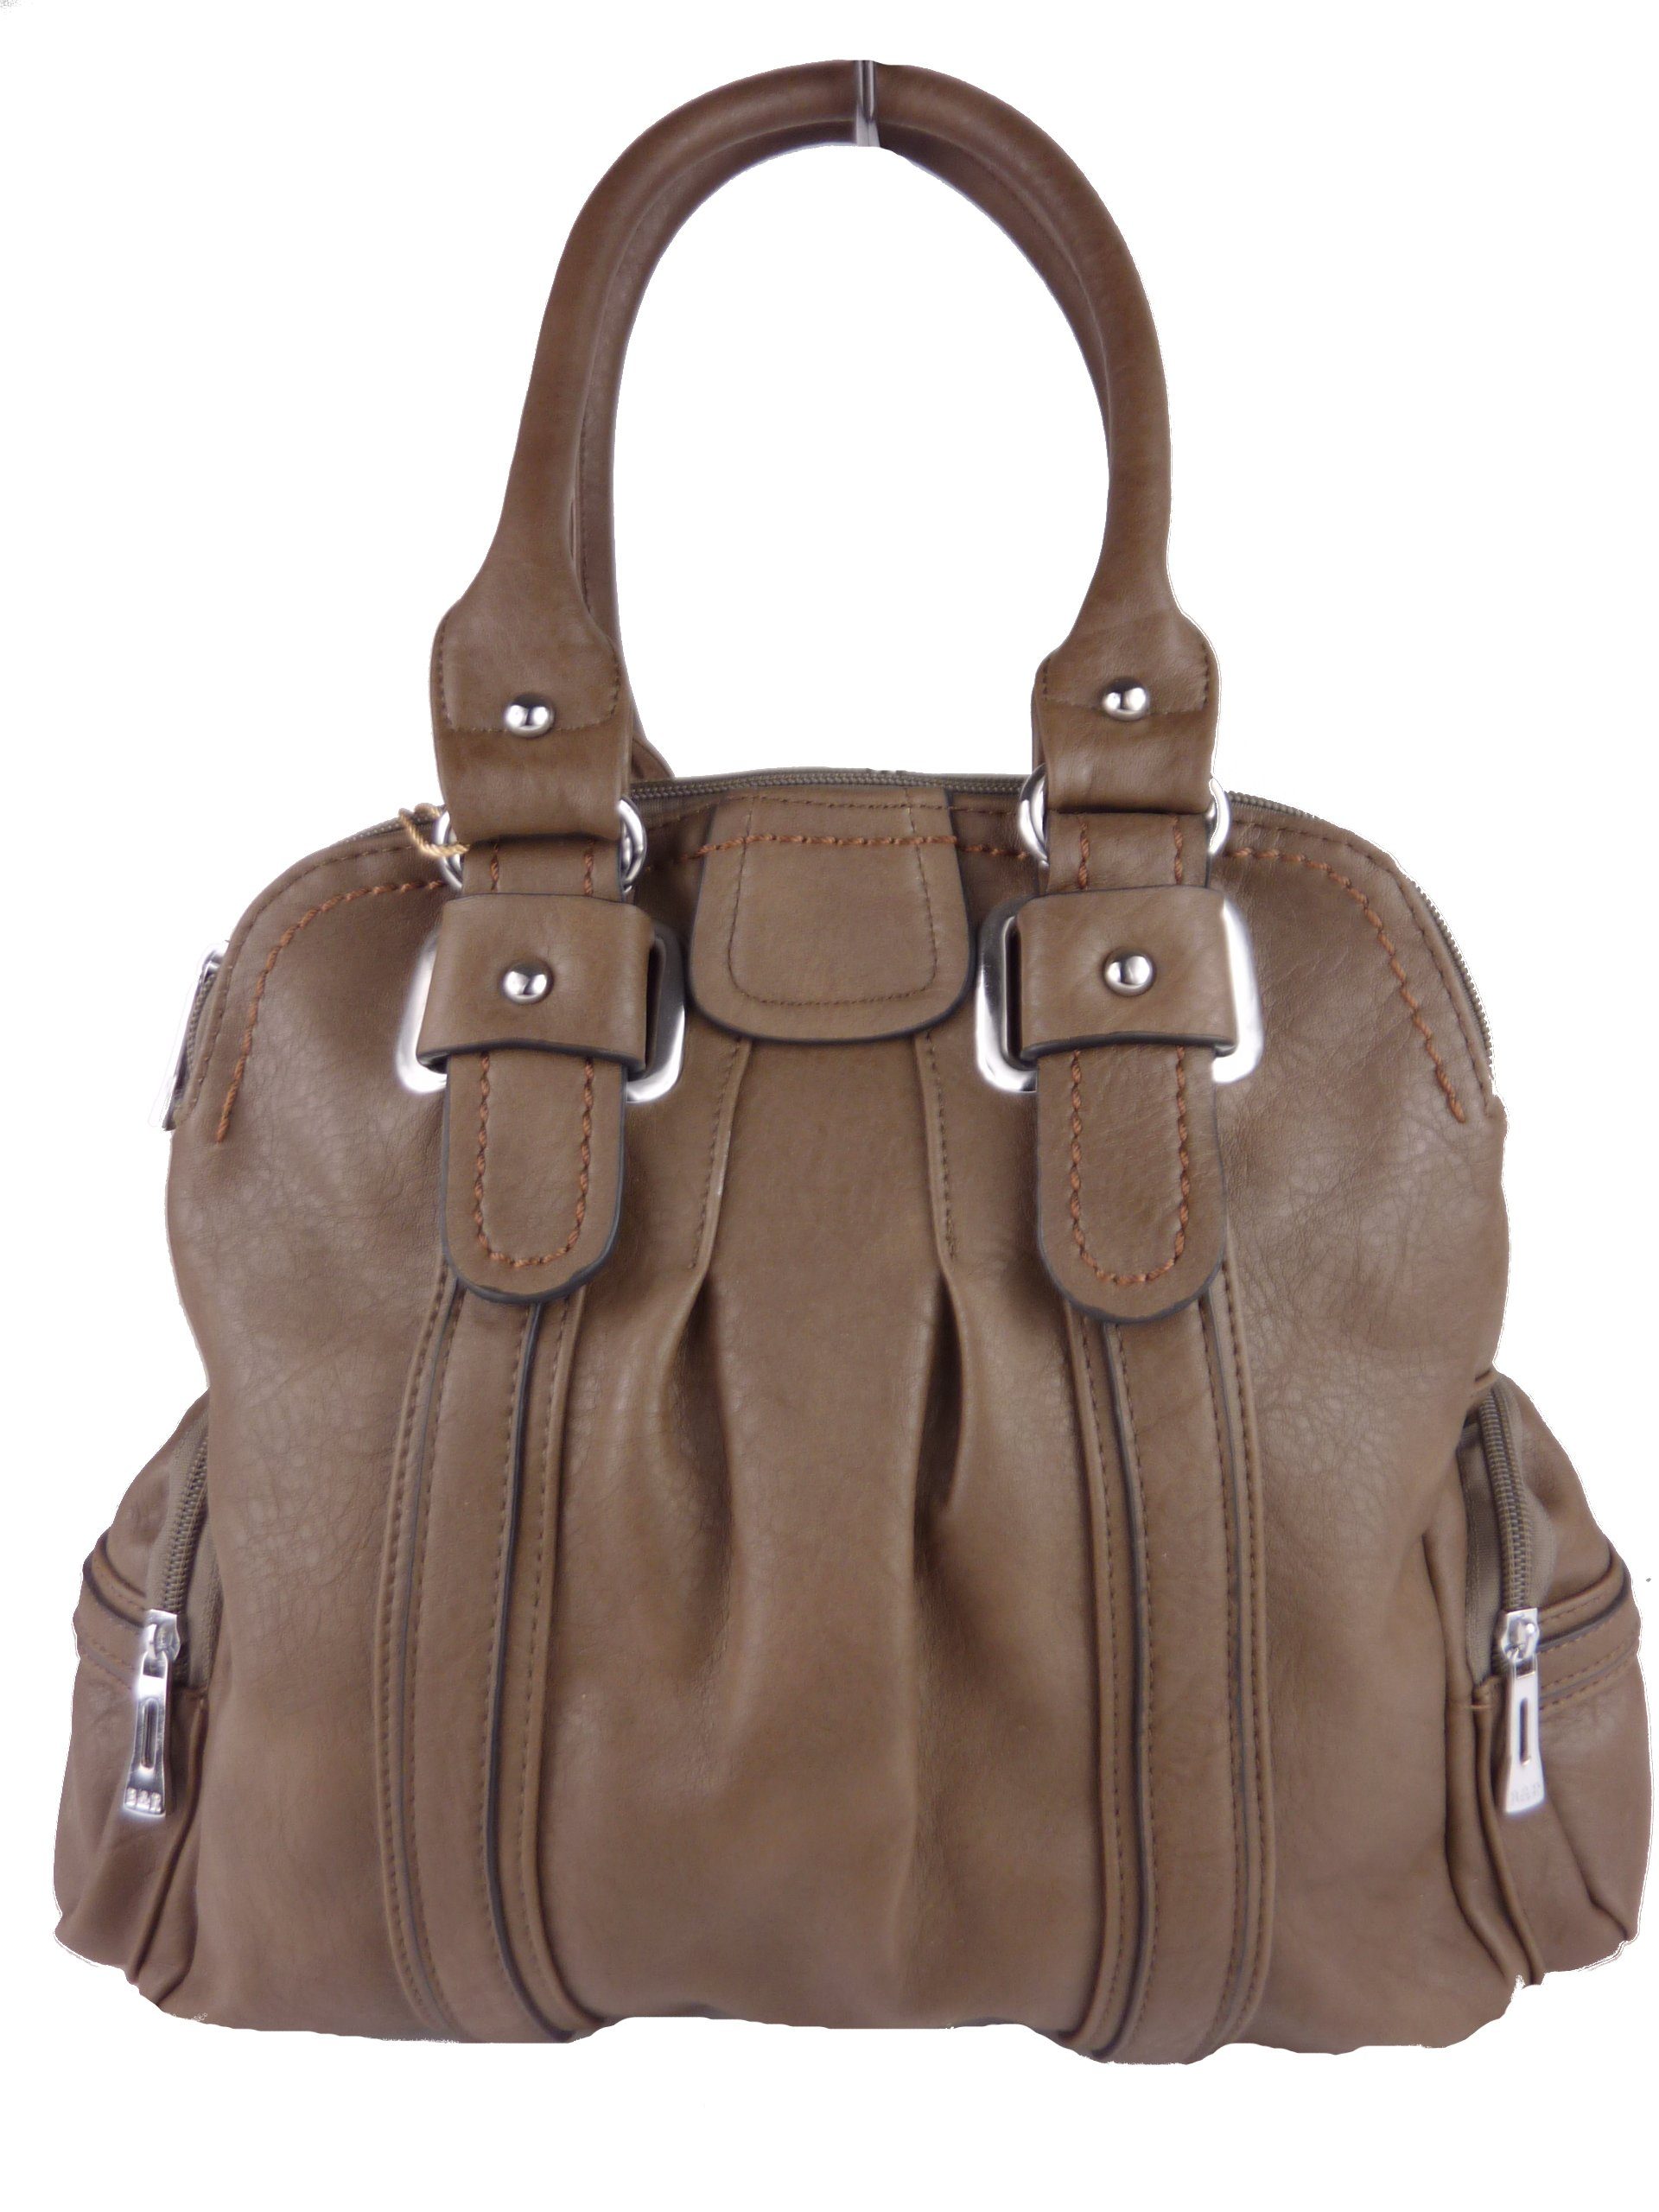 Taschen4life Handtasche klassiche Handtasche T25 mit Tragegriffen & langen Schulterriemen, Schultertasche, elegant & sportlich, Tote bag, hobo khaki